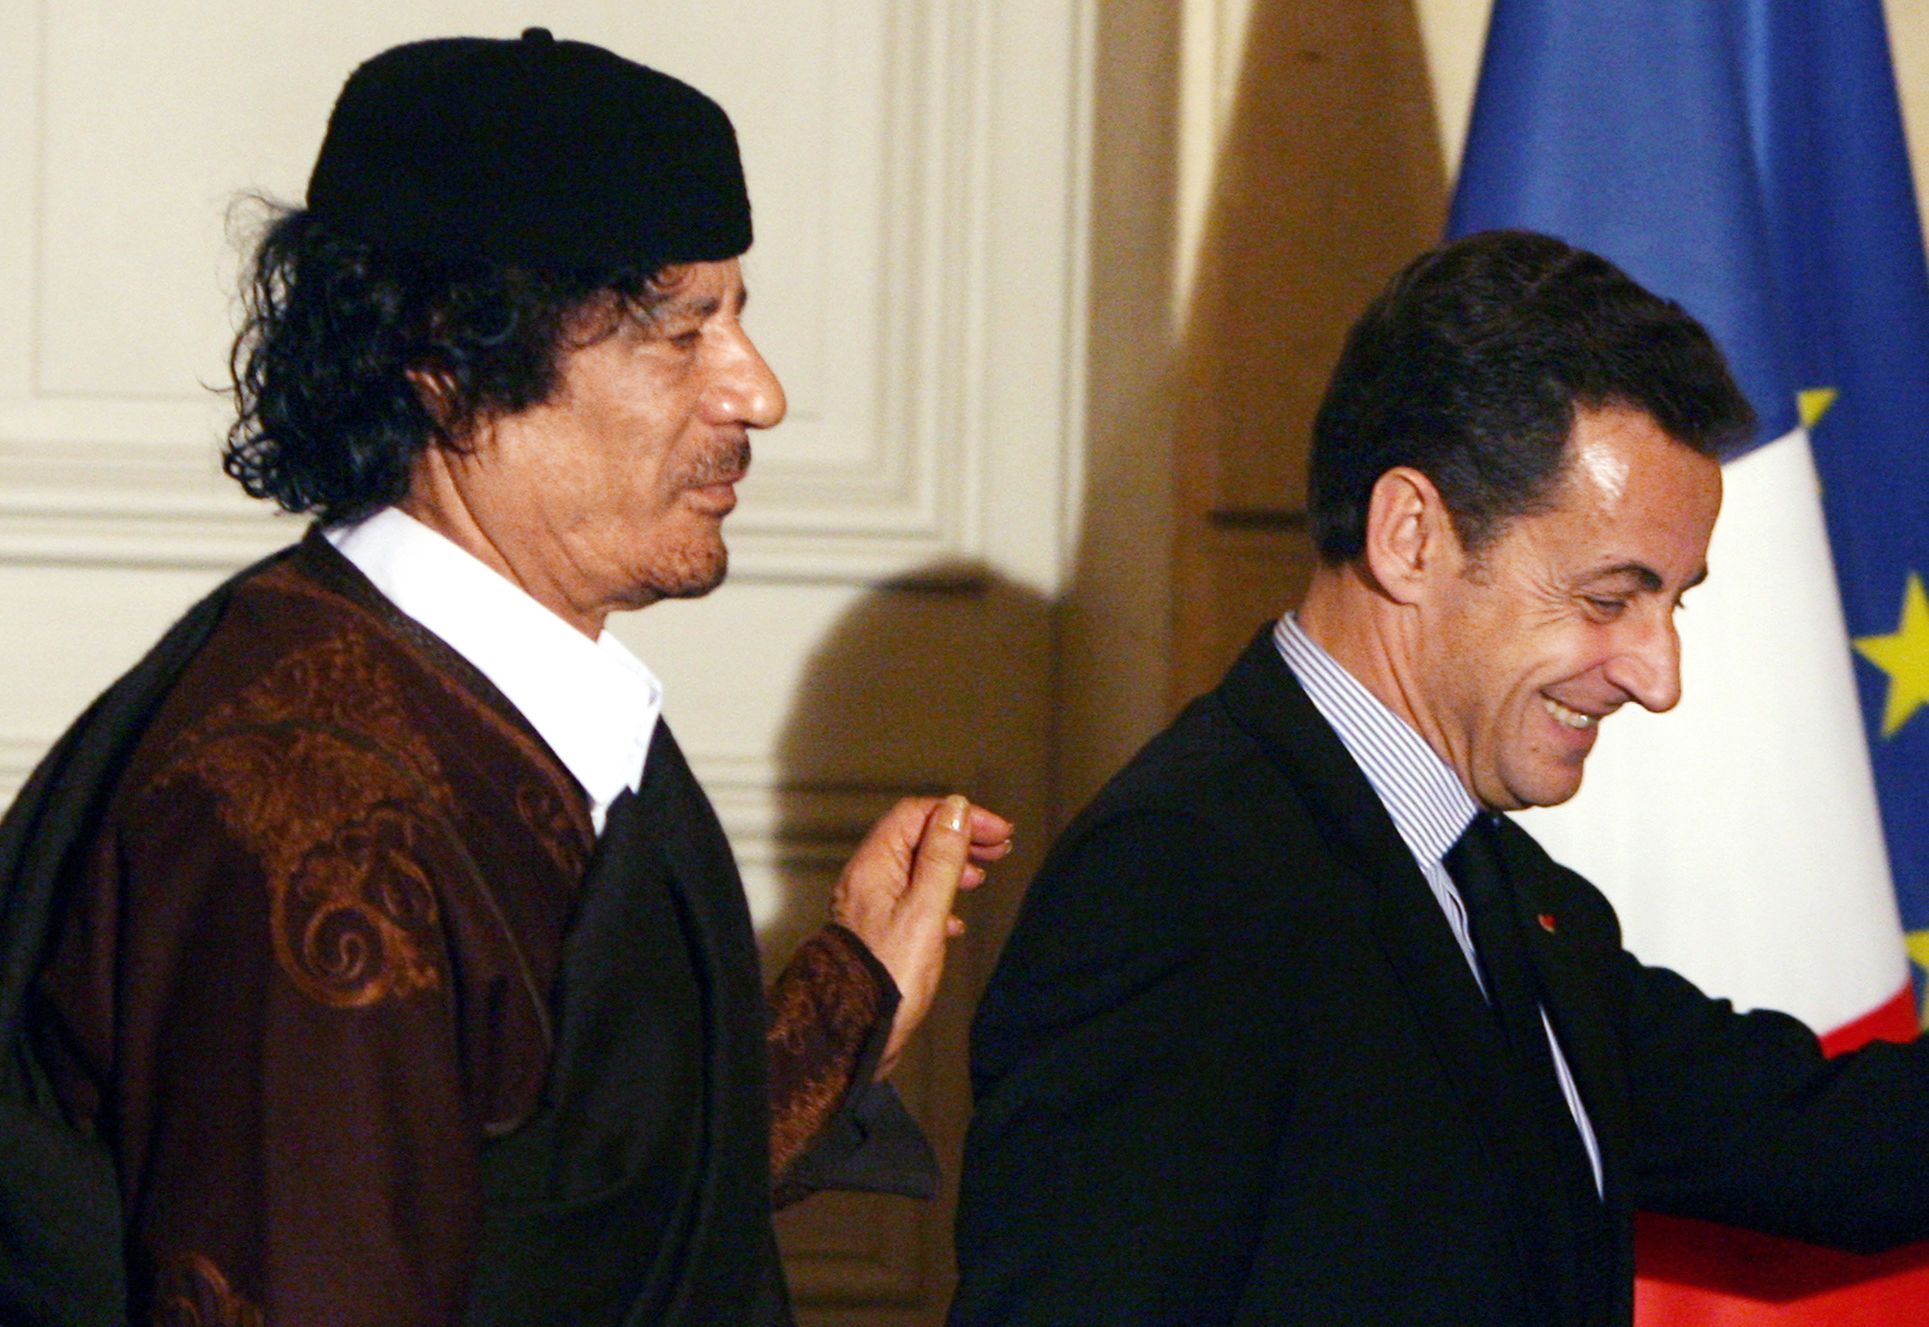 Nicolase Sarkozyho podezřívají z toho, že ho v prezidentské kampani v roce 2007 finančně podpořil tehdejší libyjský vůdce Muammar Kaddáfí.